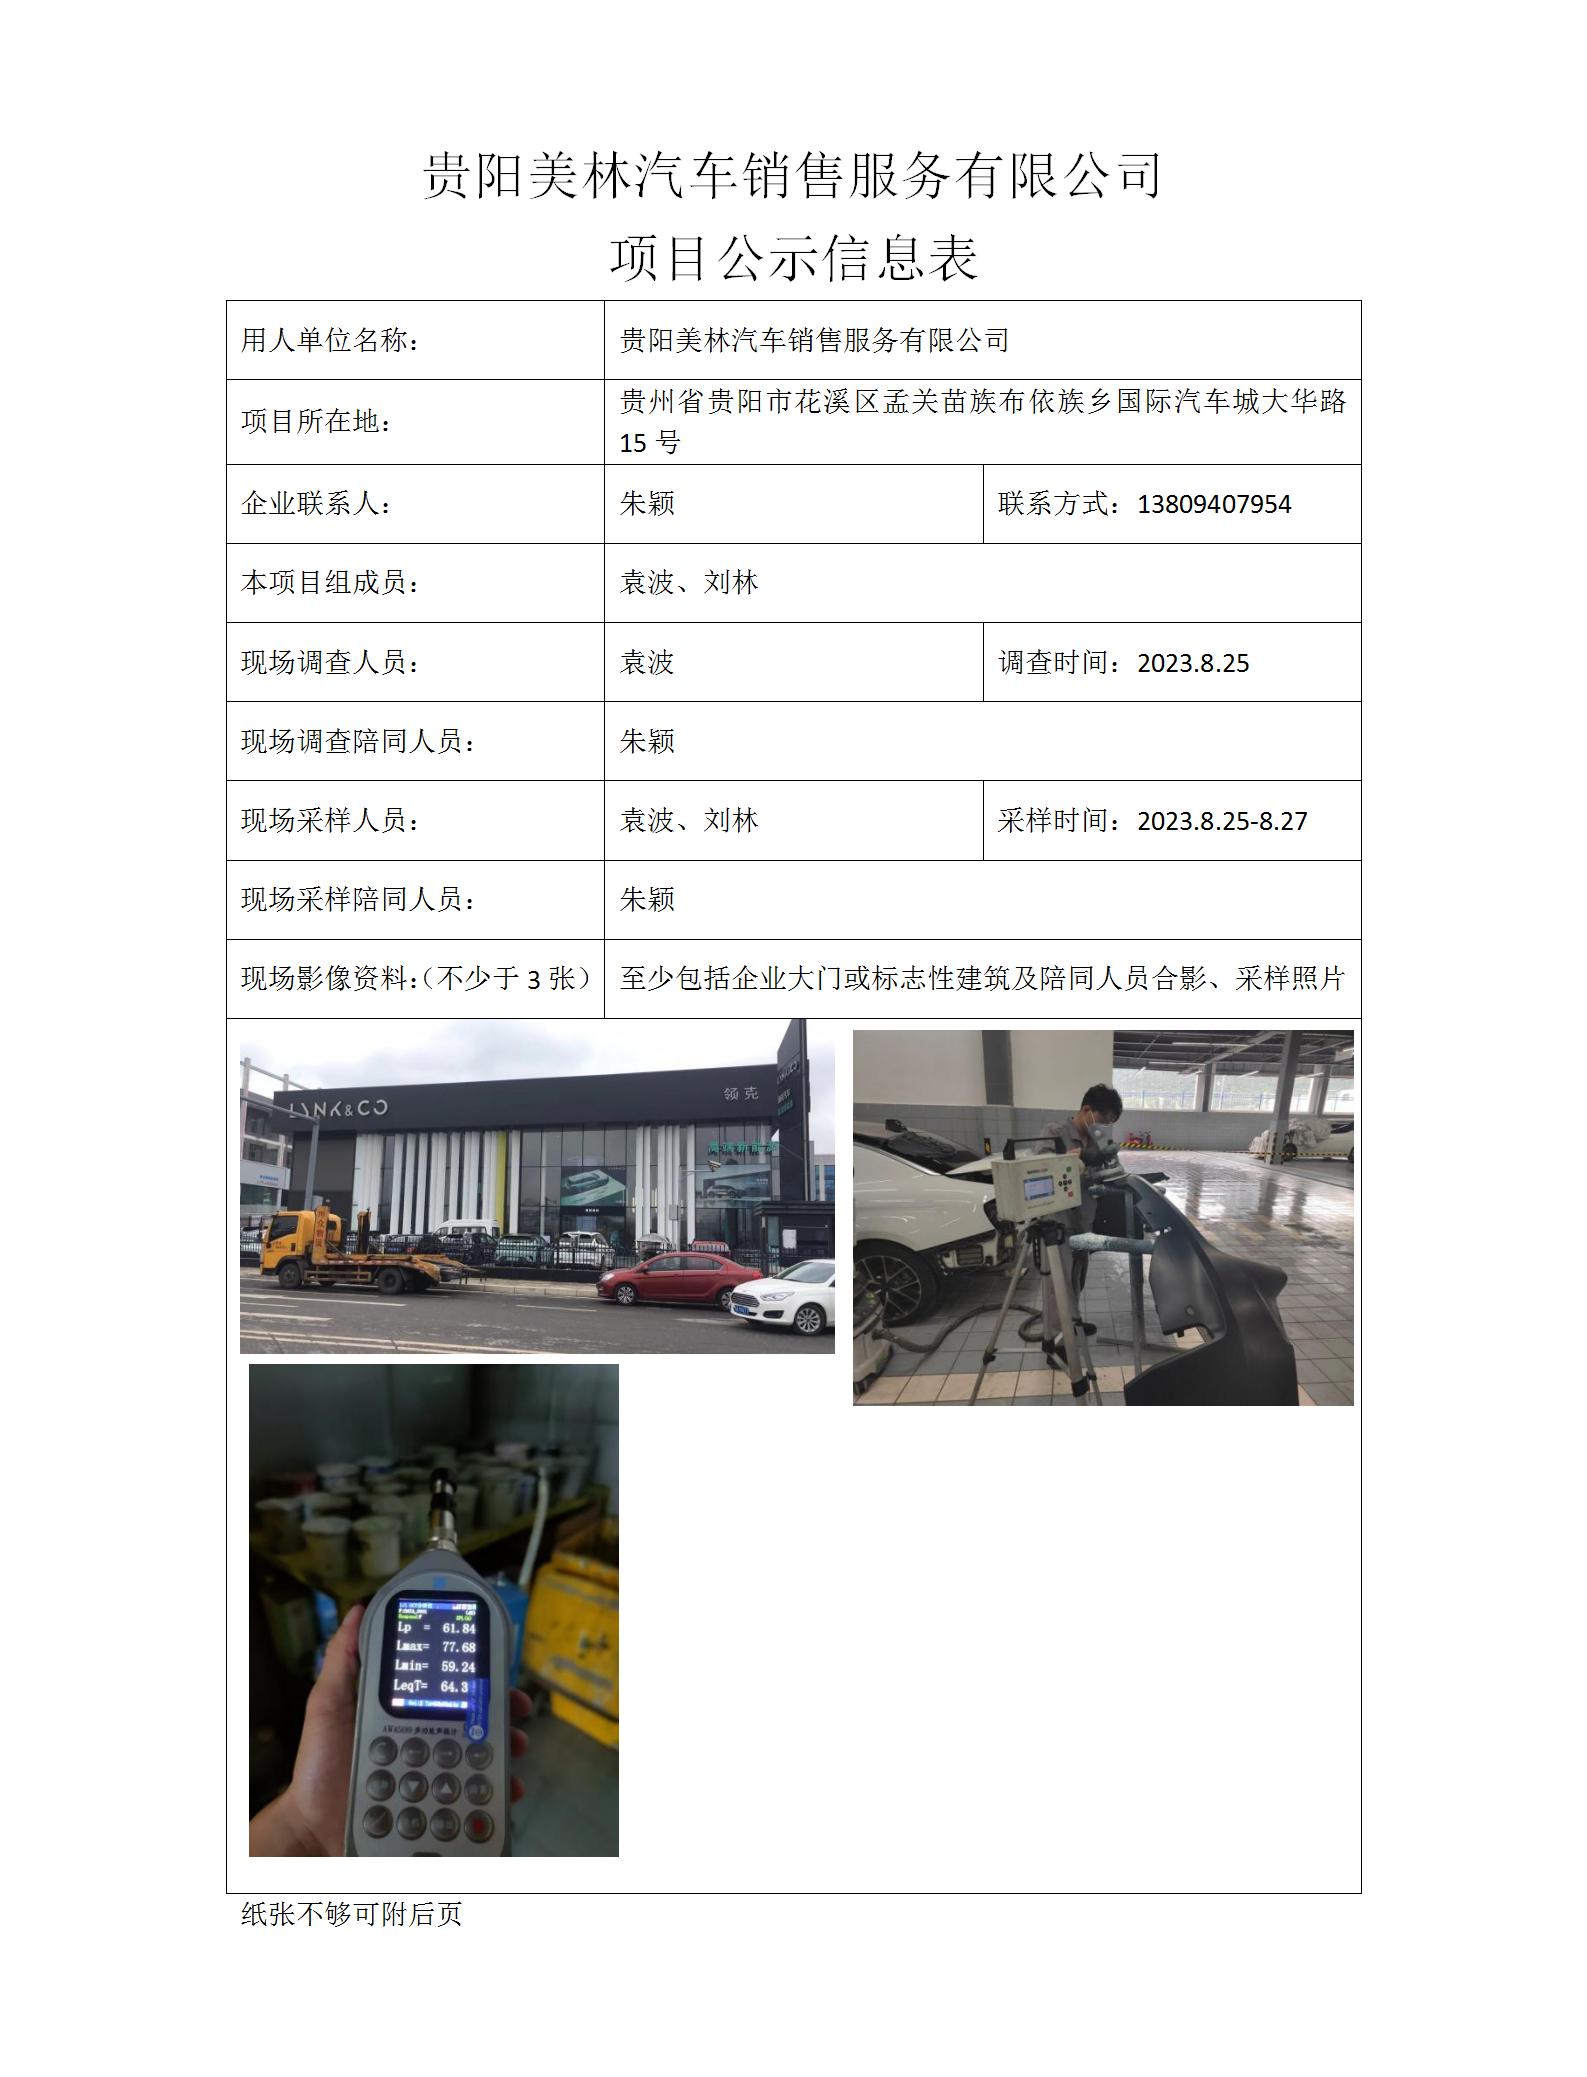 MD2023-0234（XP-F）贵阳美林汽车销售服务有限公司项目公示信息表_01.jpg